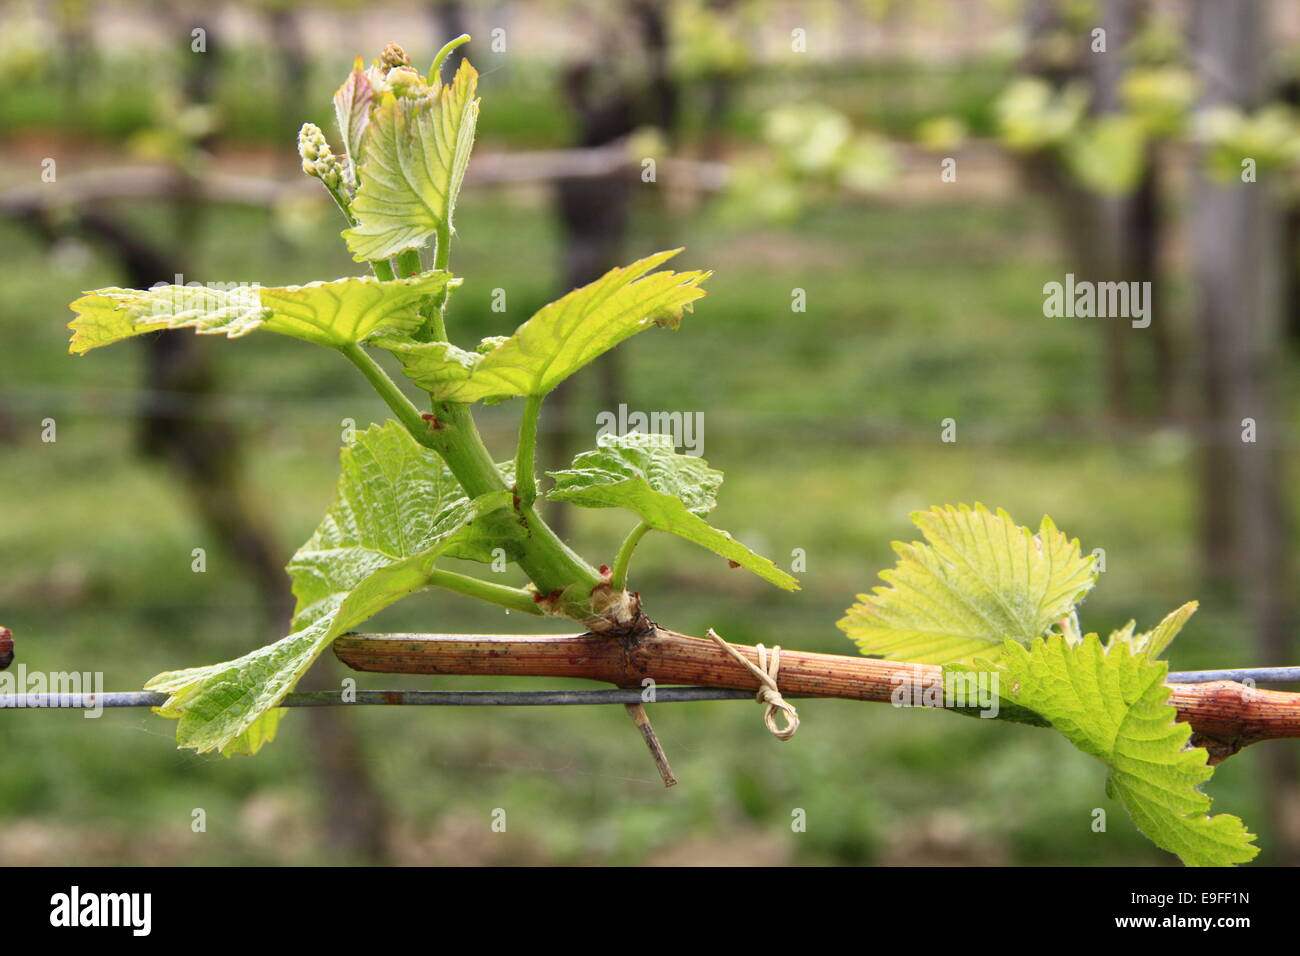 Shoots in grapevine (Vitis vinifera) Stock Photo